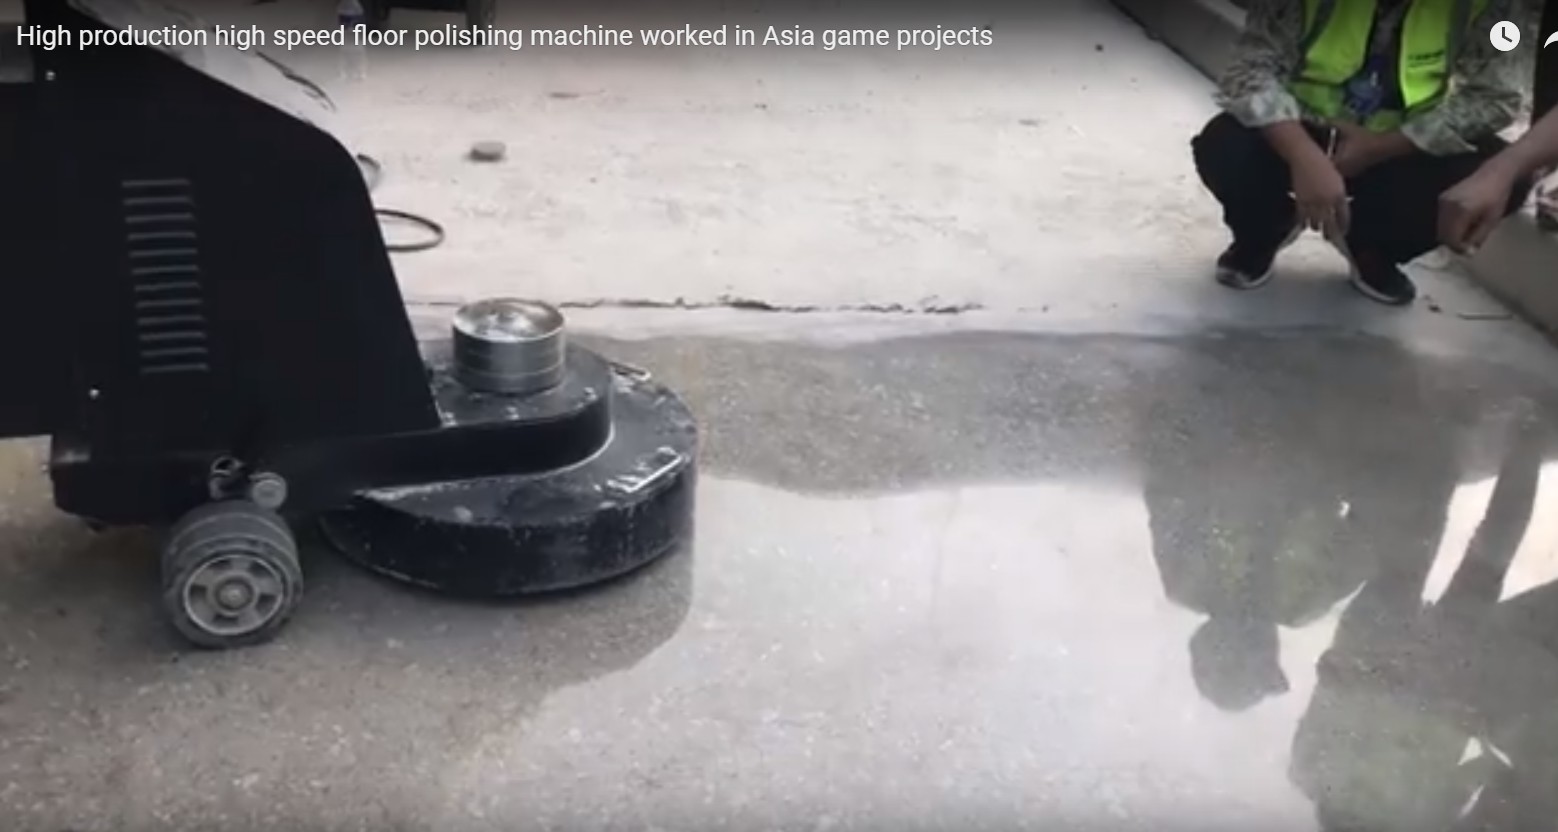 máquina de polimento de piso de alta velocidade de alta qualidade